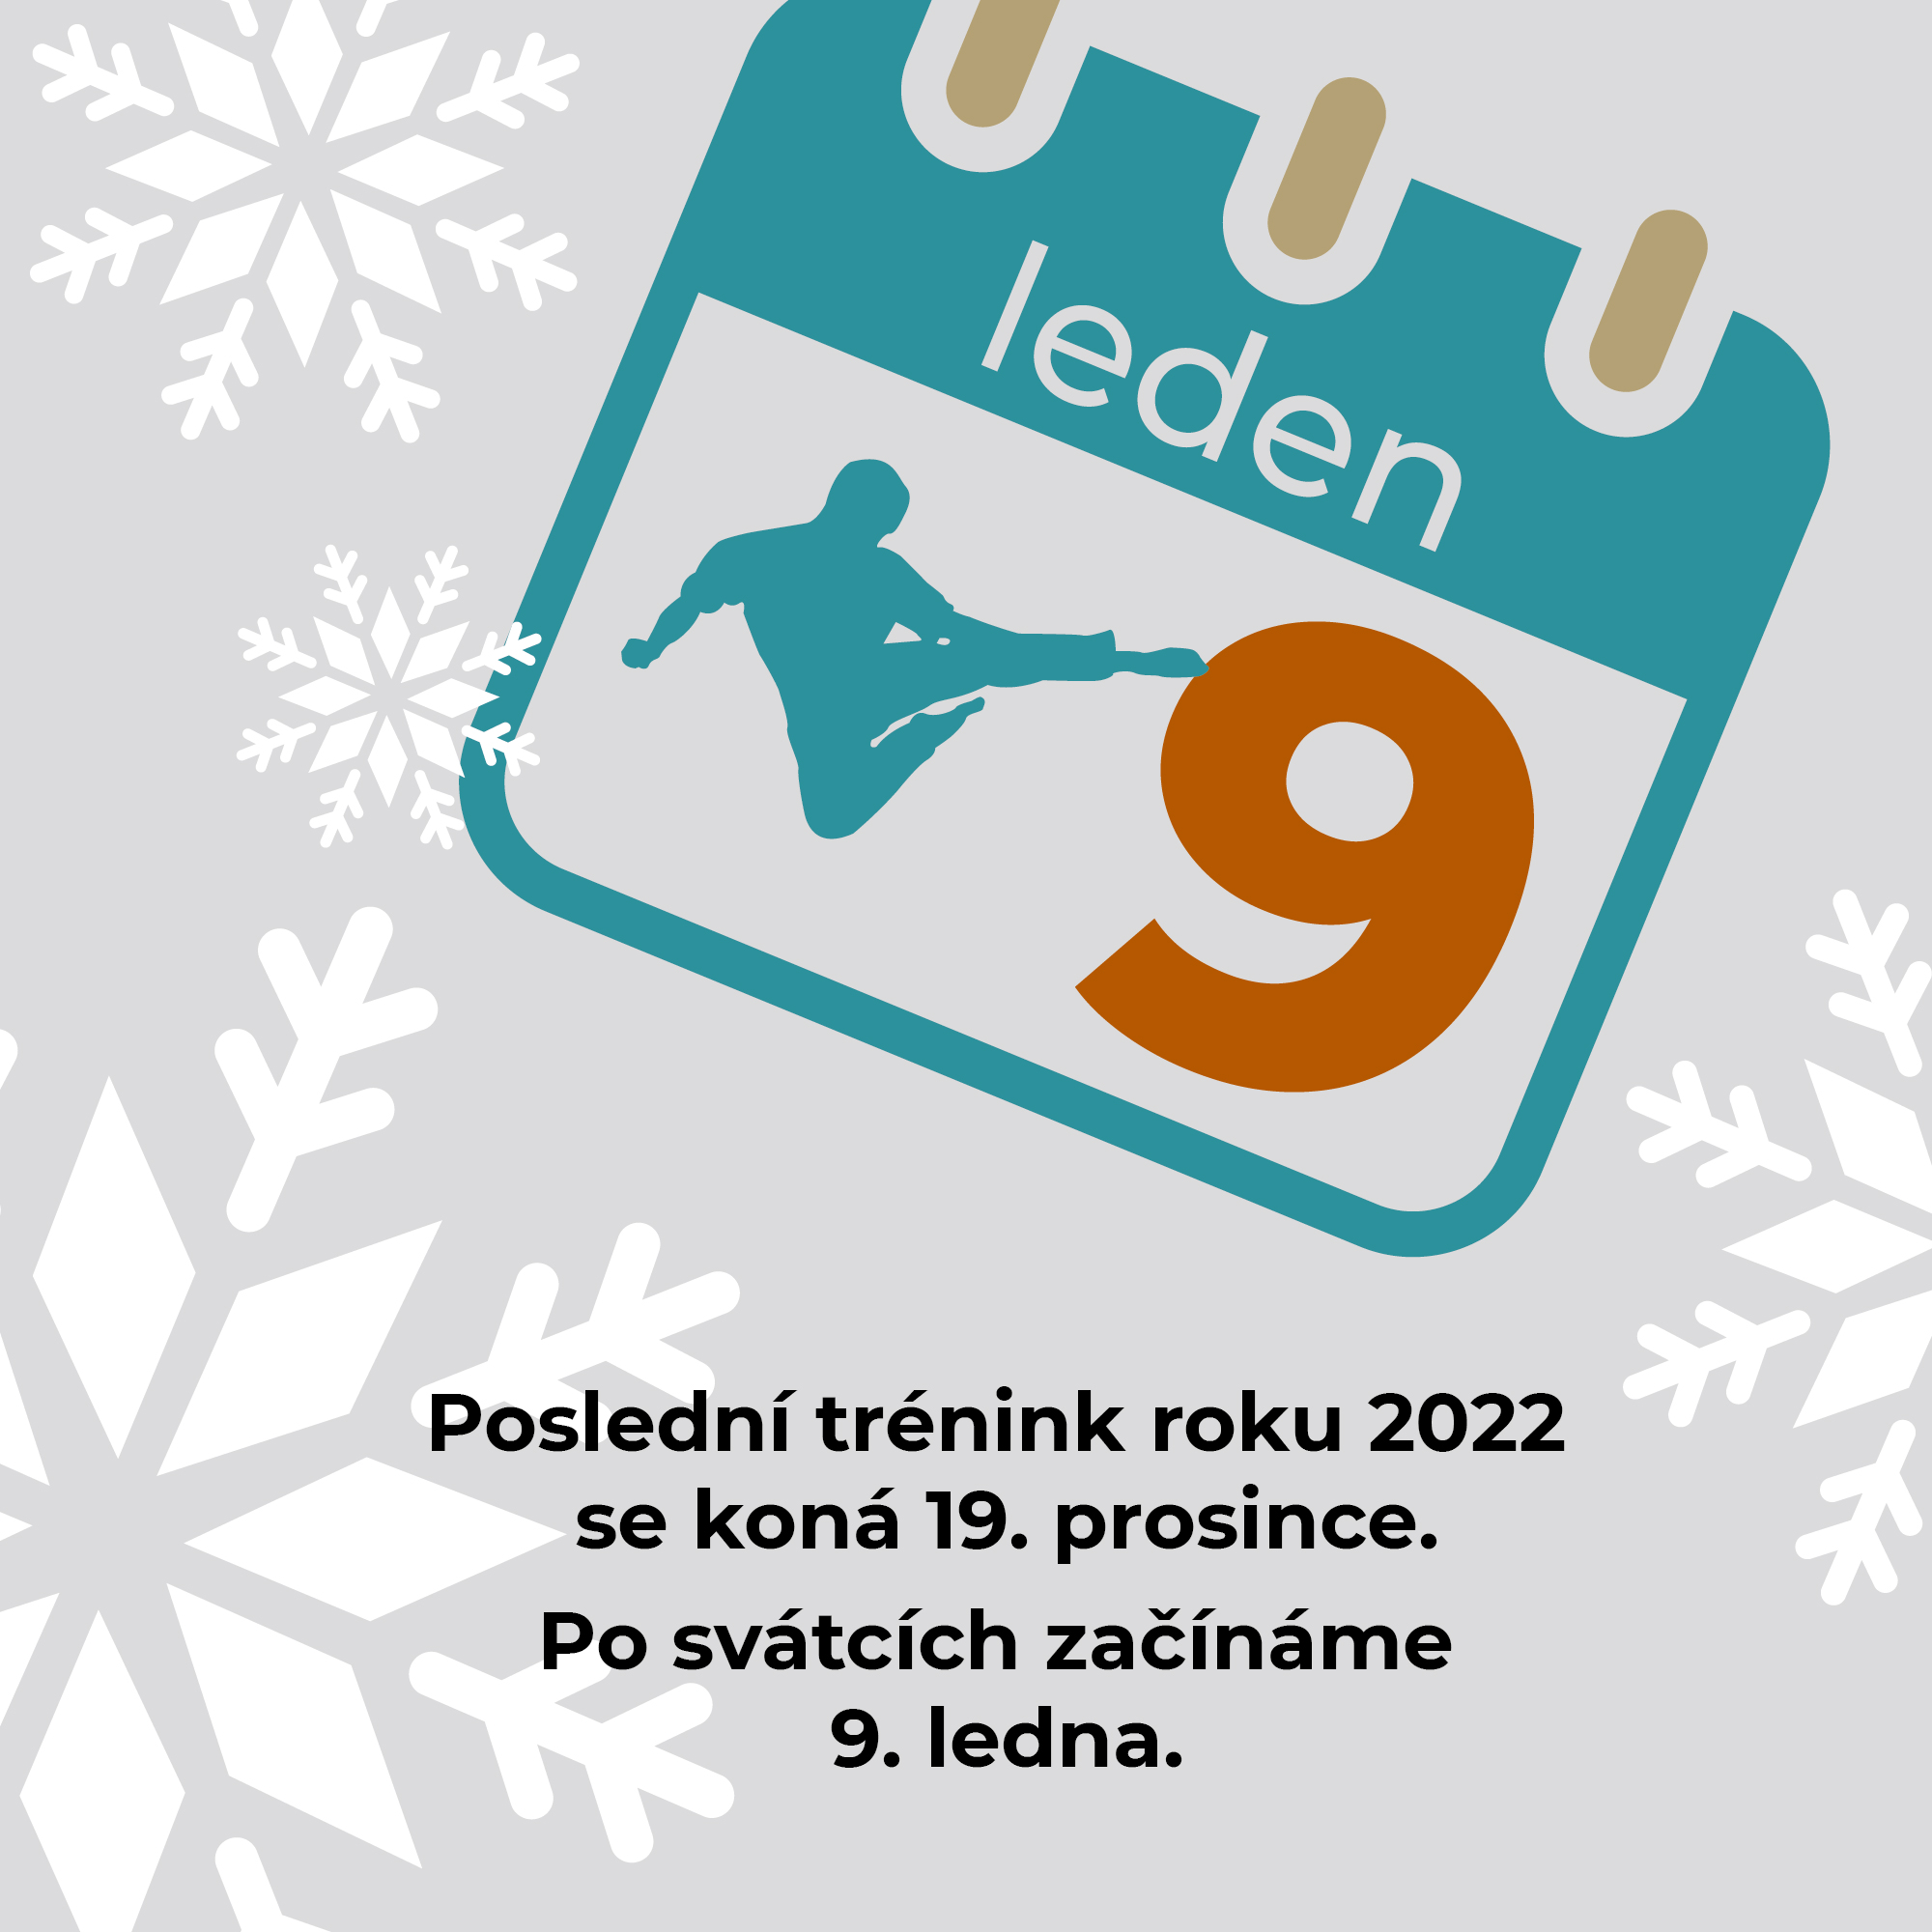 Poslední trénink roku 2022 se koná 19. prosince. Po svátcích začínáme 9. ledna.